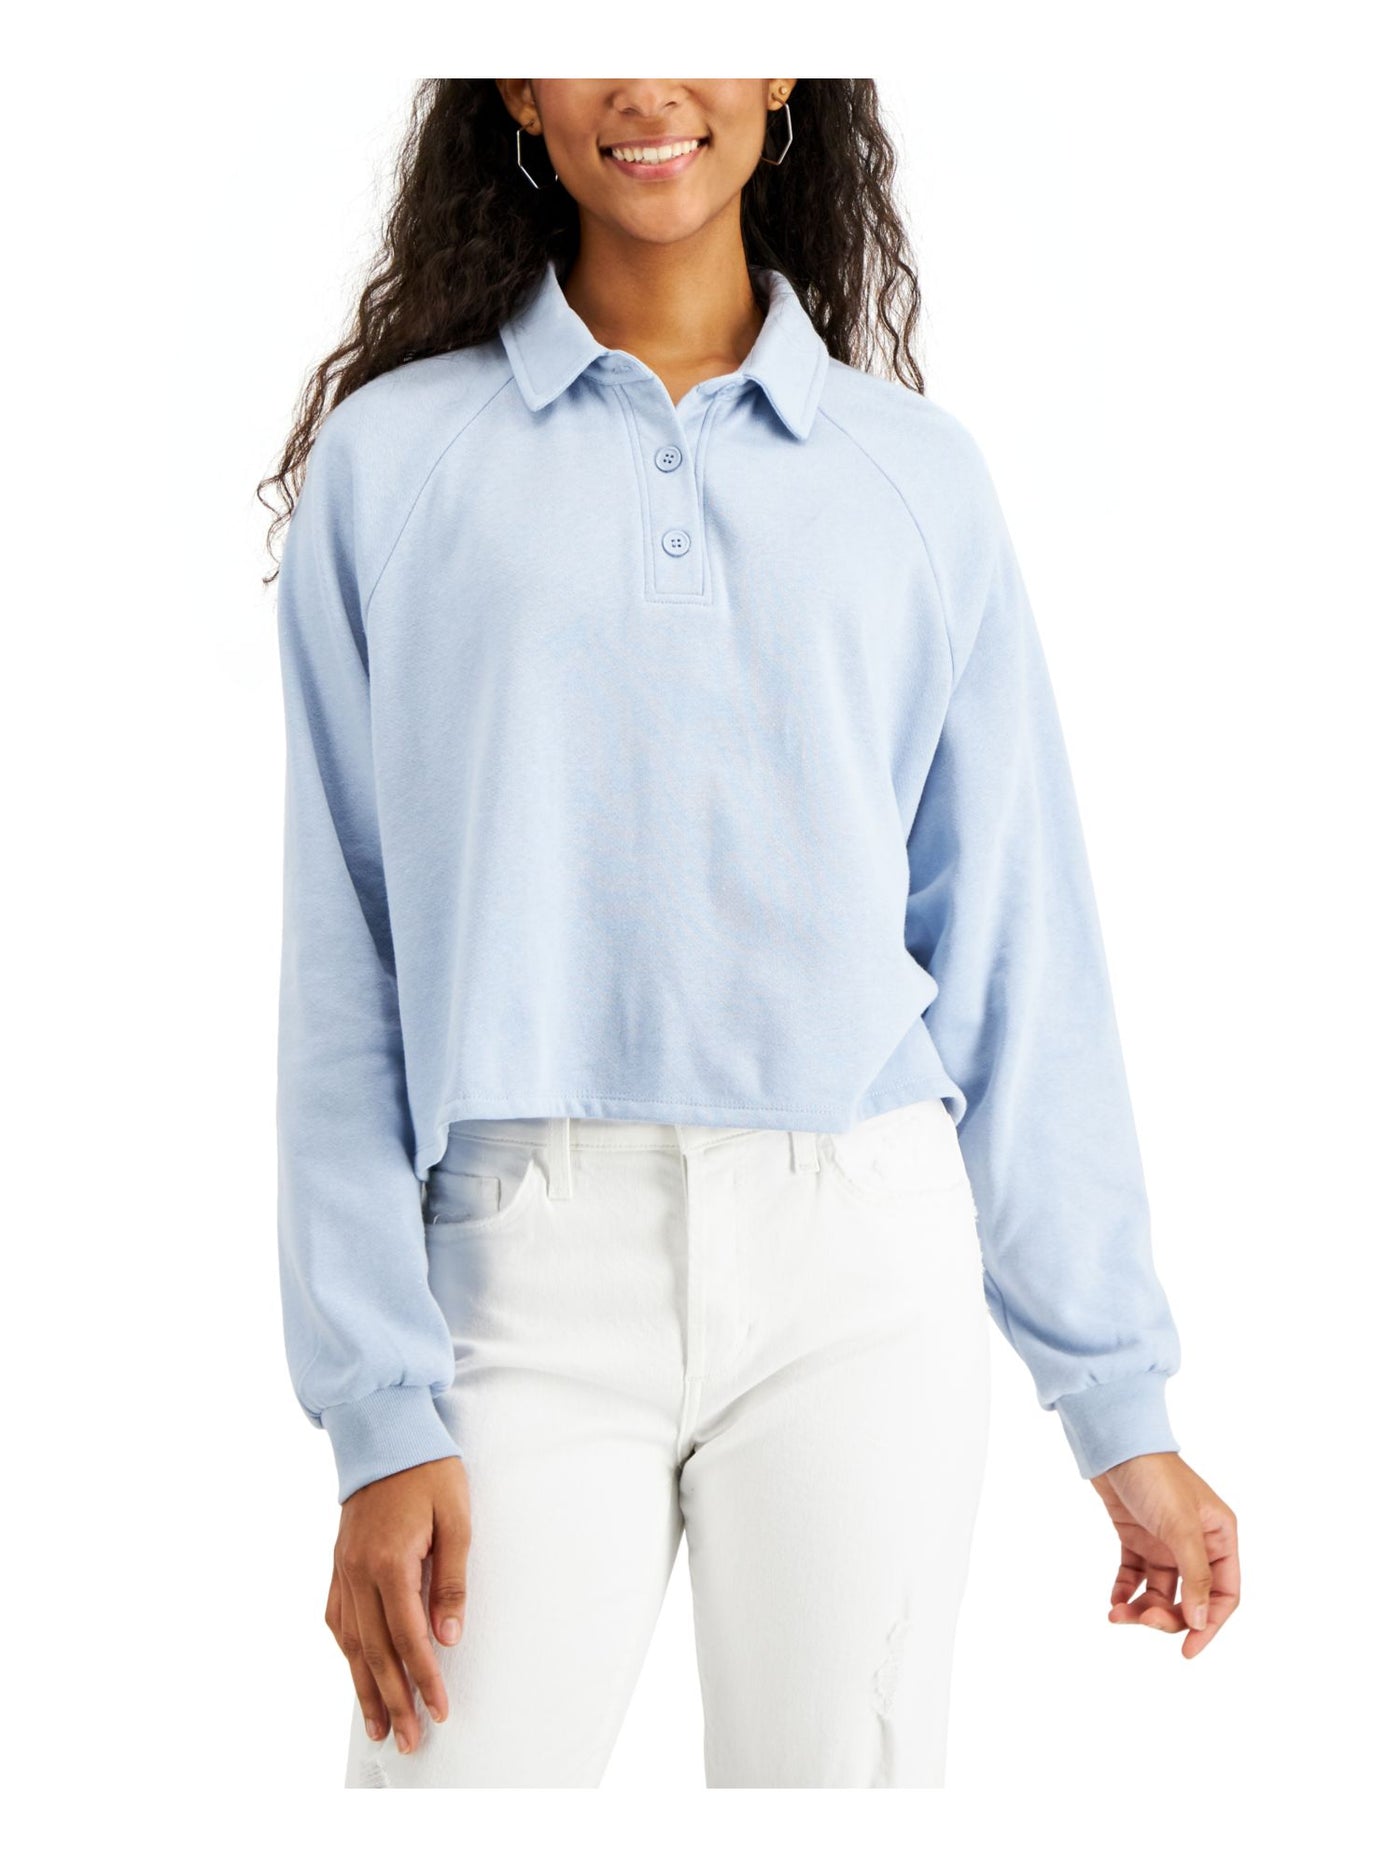 SELF E Womens Light Blue Cotton Blend Short Length Cuffed Long Sleeve Collared Crop Top Juniors XL